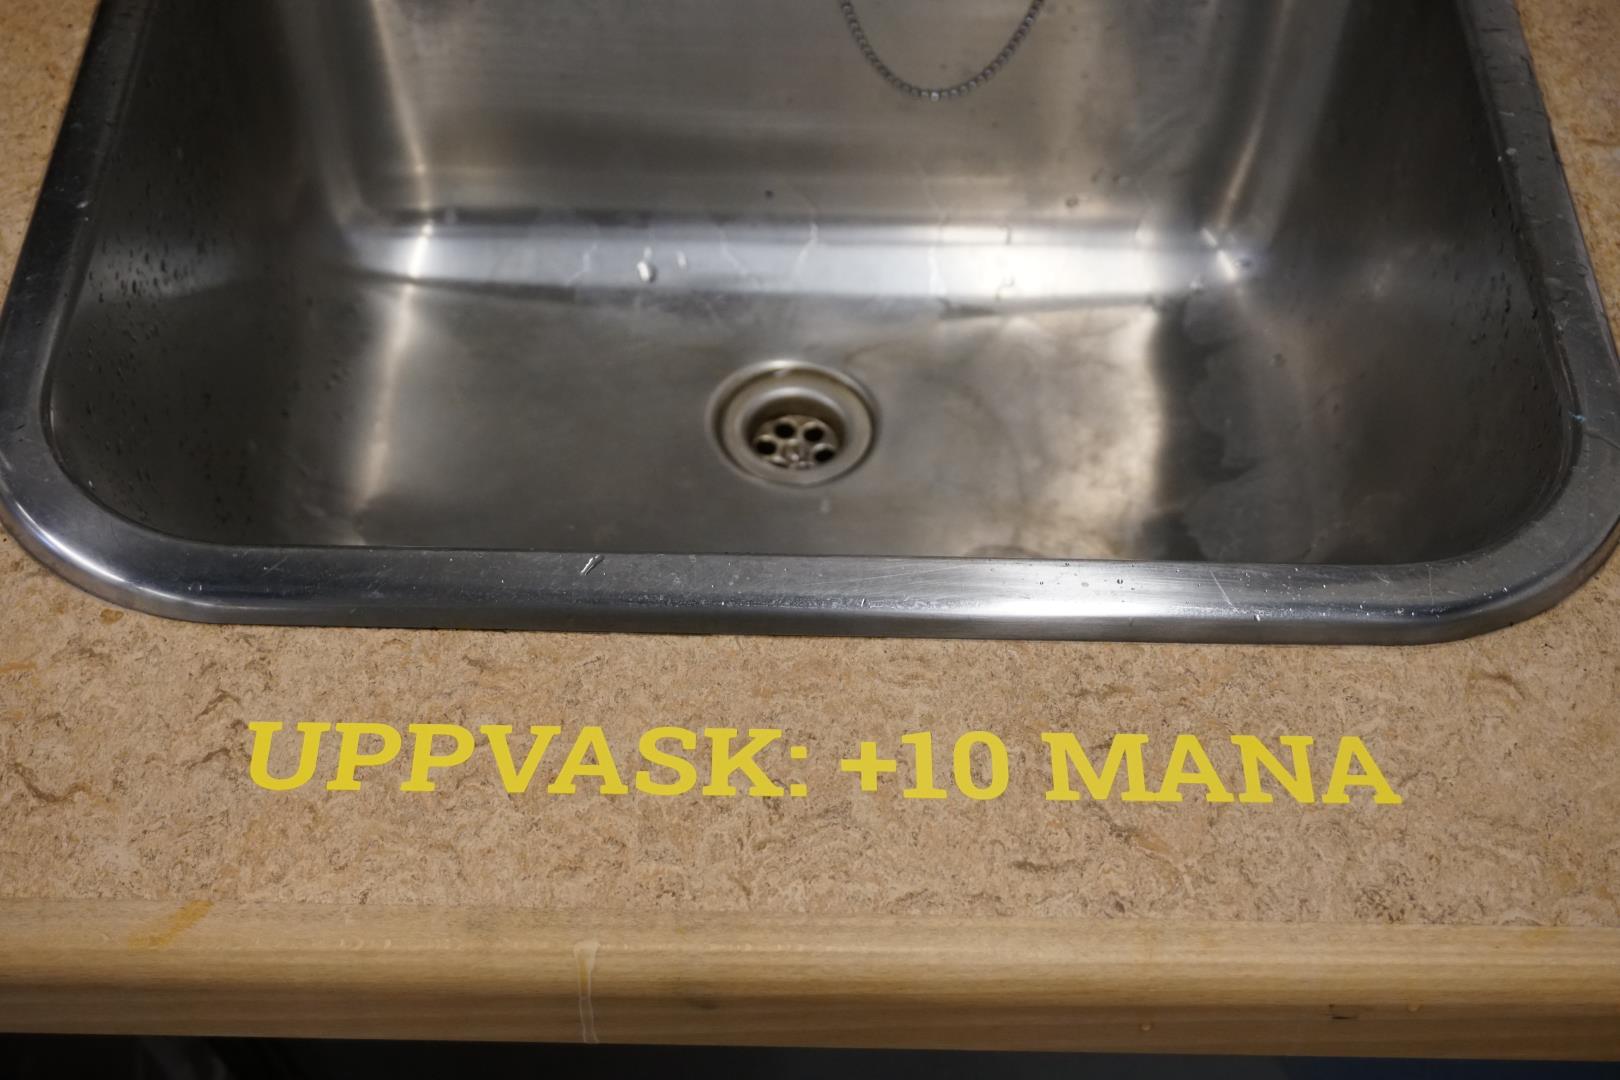 "Washing up: +10 mana"